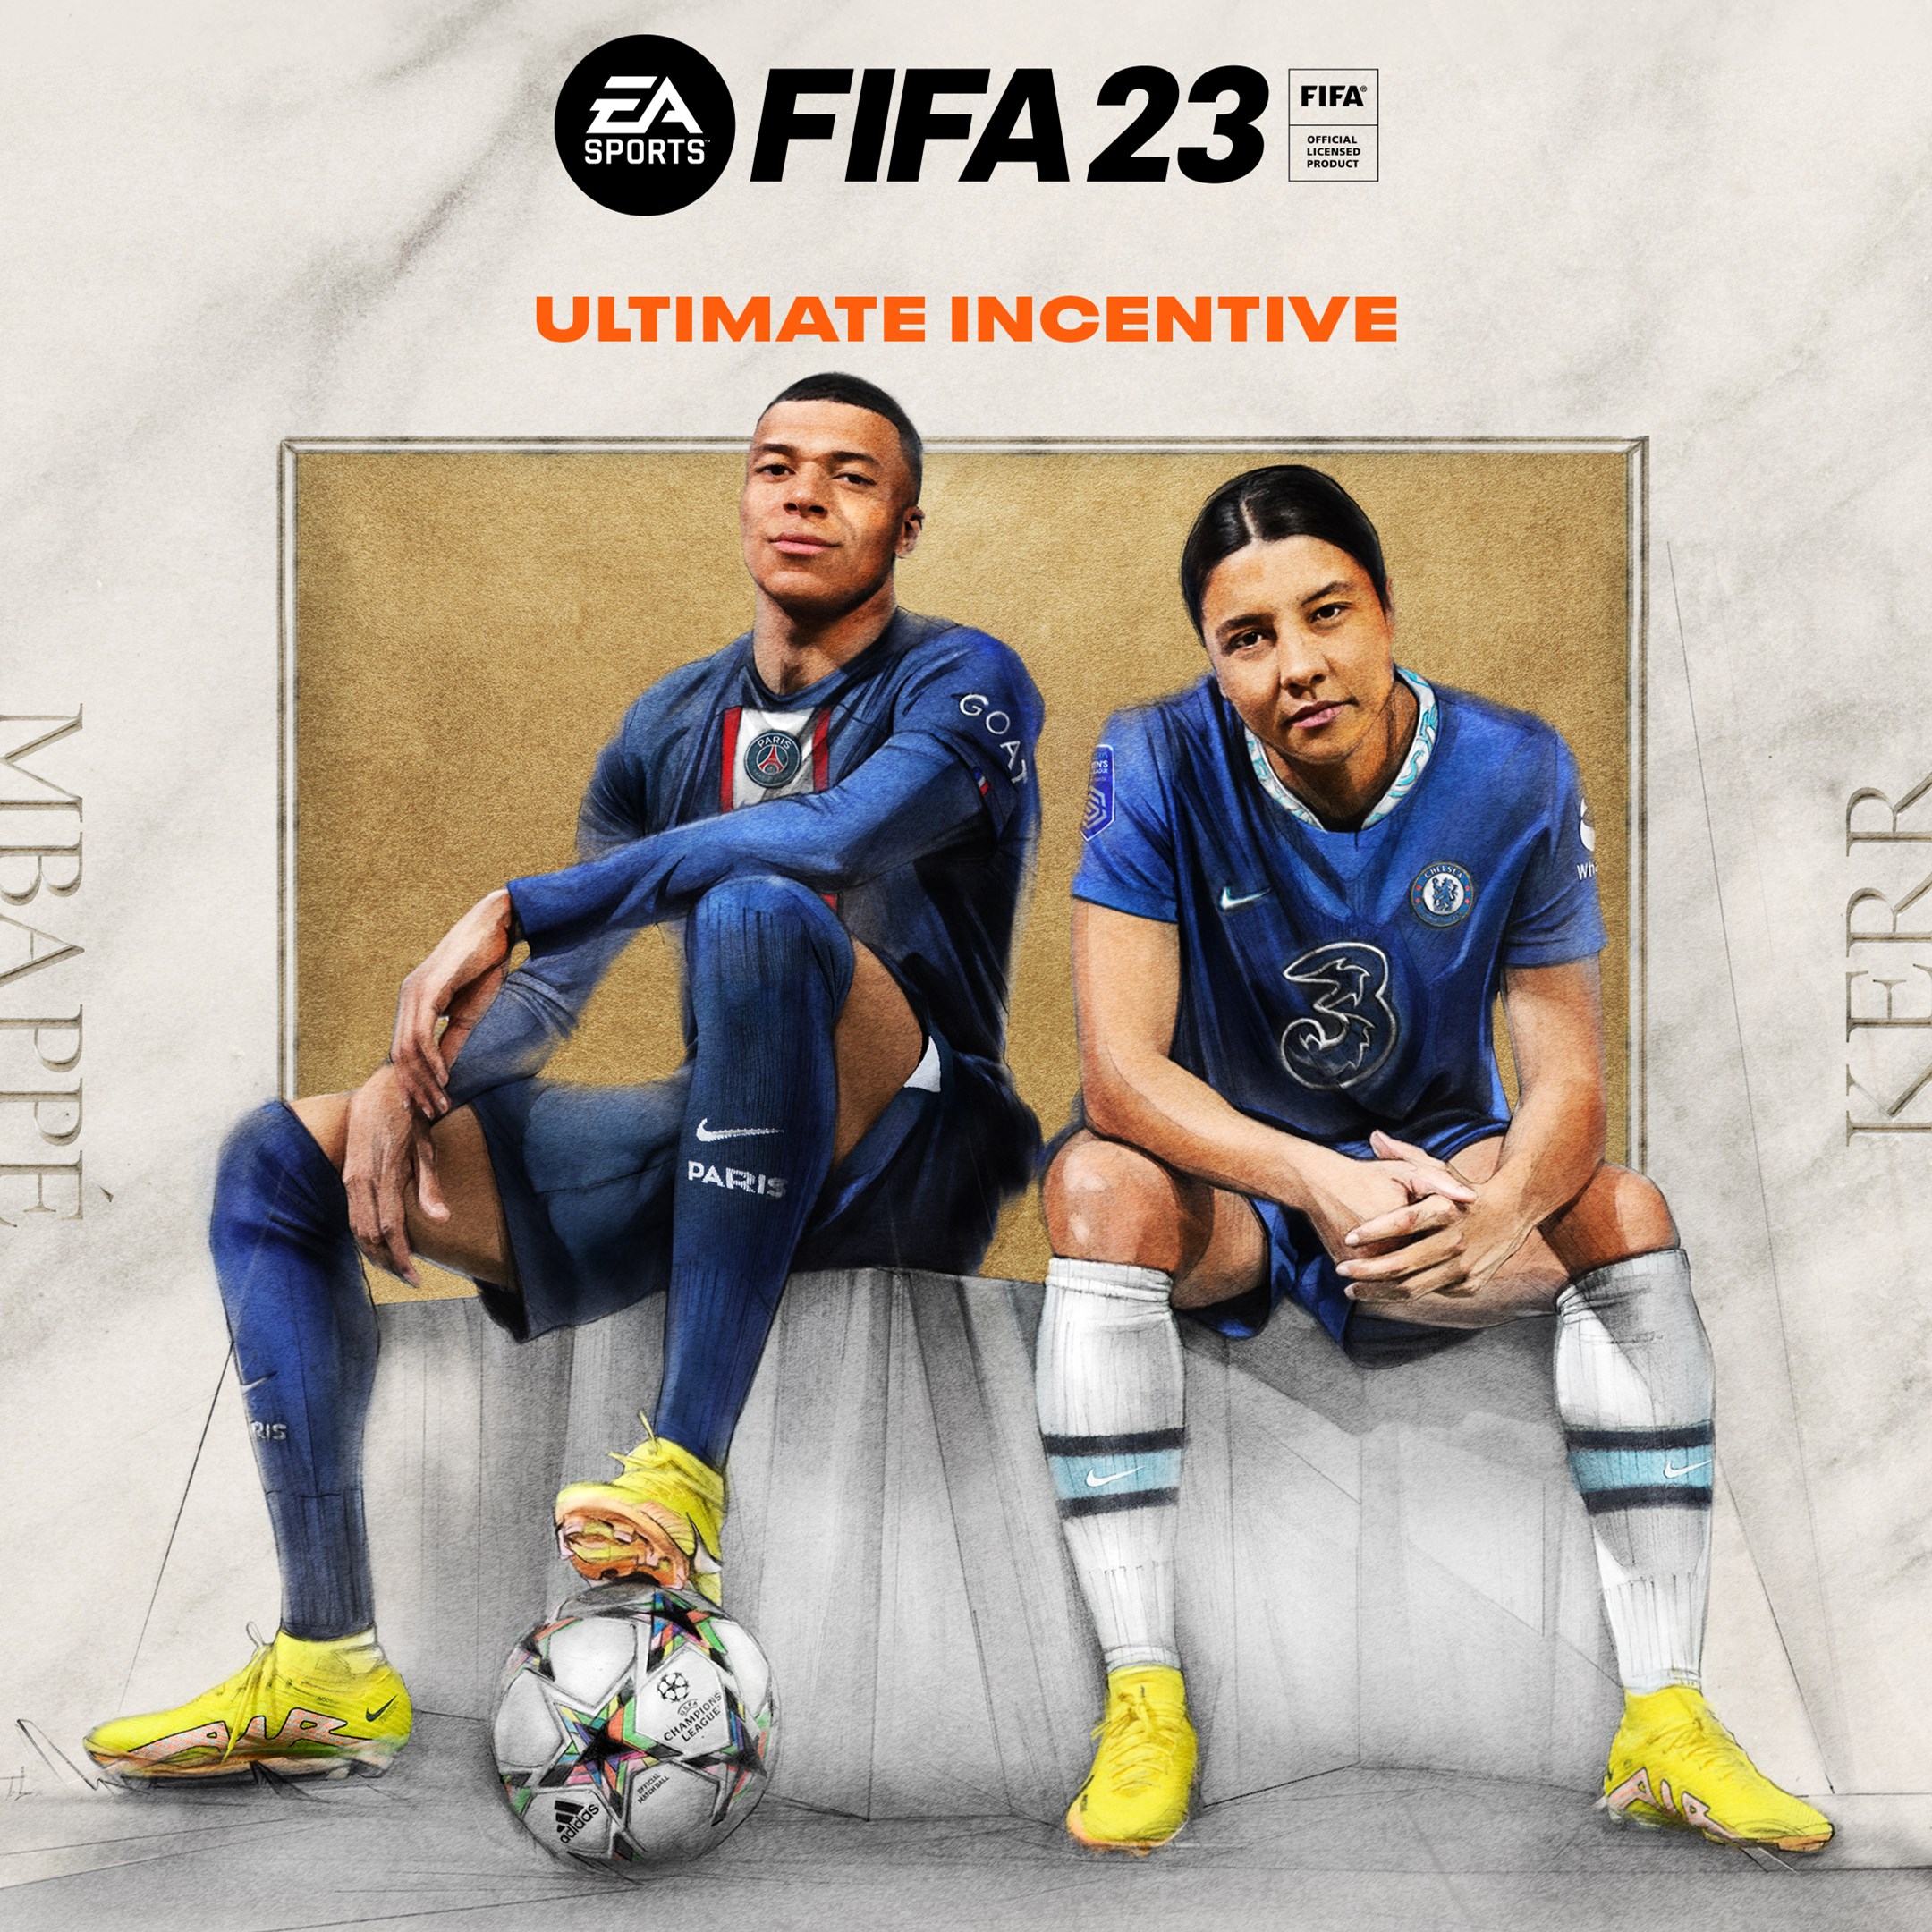 Incentivo Ultimate do EA SPORTS™ FIFA 23